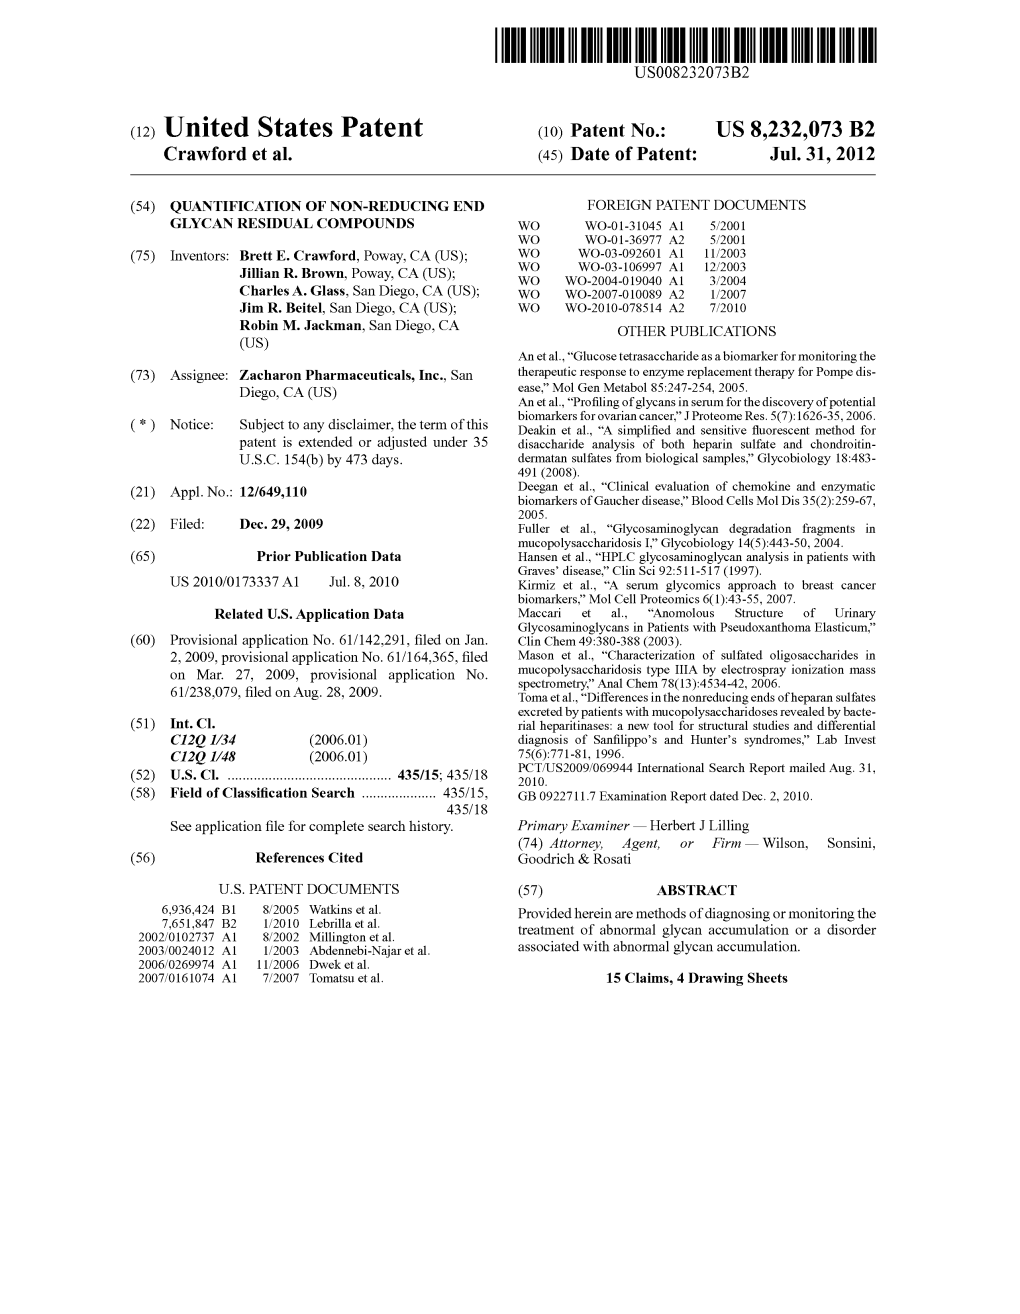 (12) United States Patent (10) Patent No.: US 8,232,073 B2 Crawford Et Al